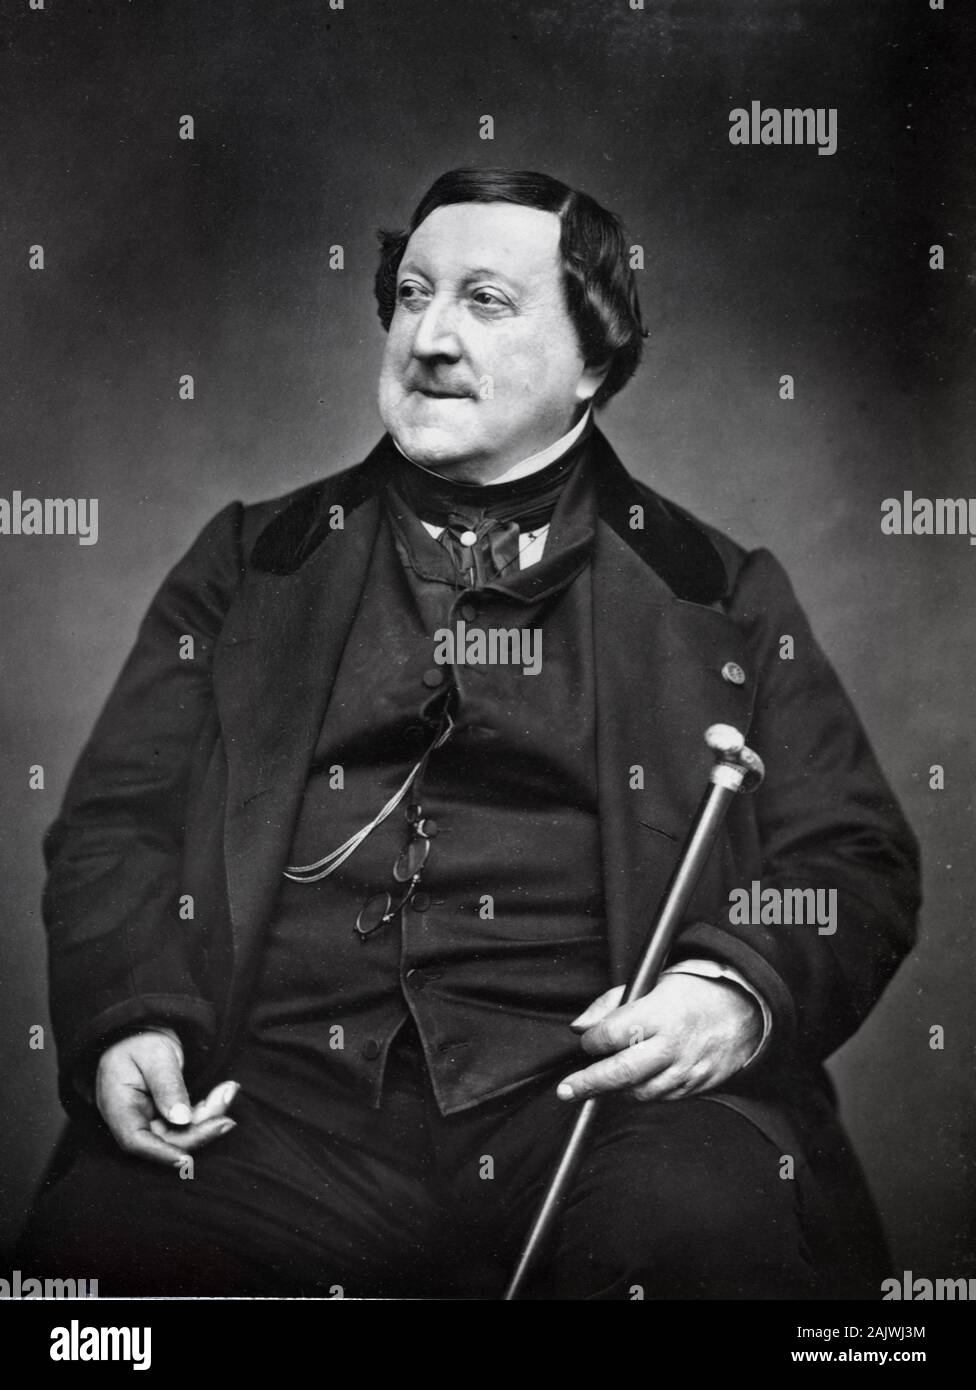 Woodburytype Portrait de Gioacchino Antonio Rossini (1792-1868) compositeur italien photographié en 1865 par le photographe Etienne Carjat Banque D'Images